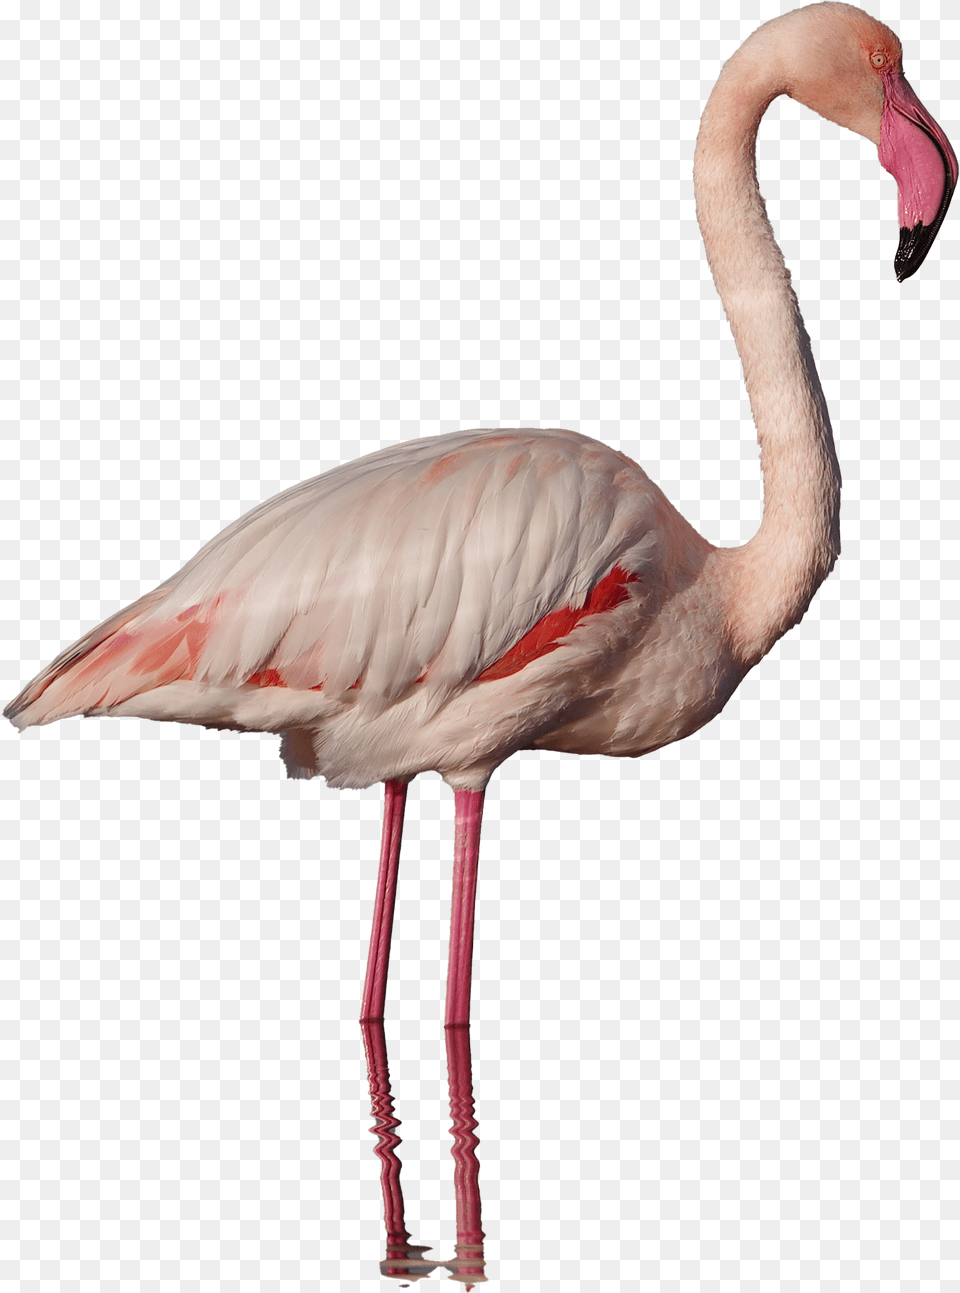 Flamingo Background Flamingo, Animal, Bird Png Image